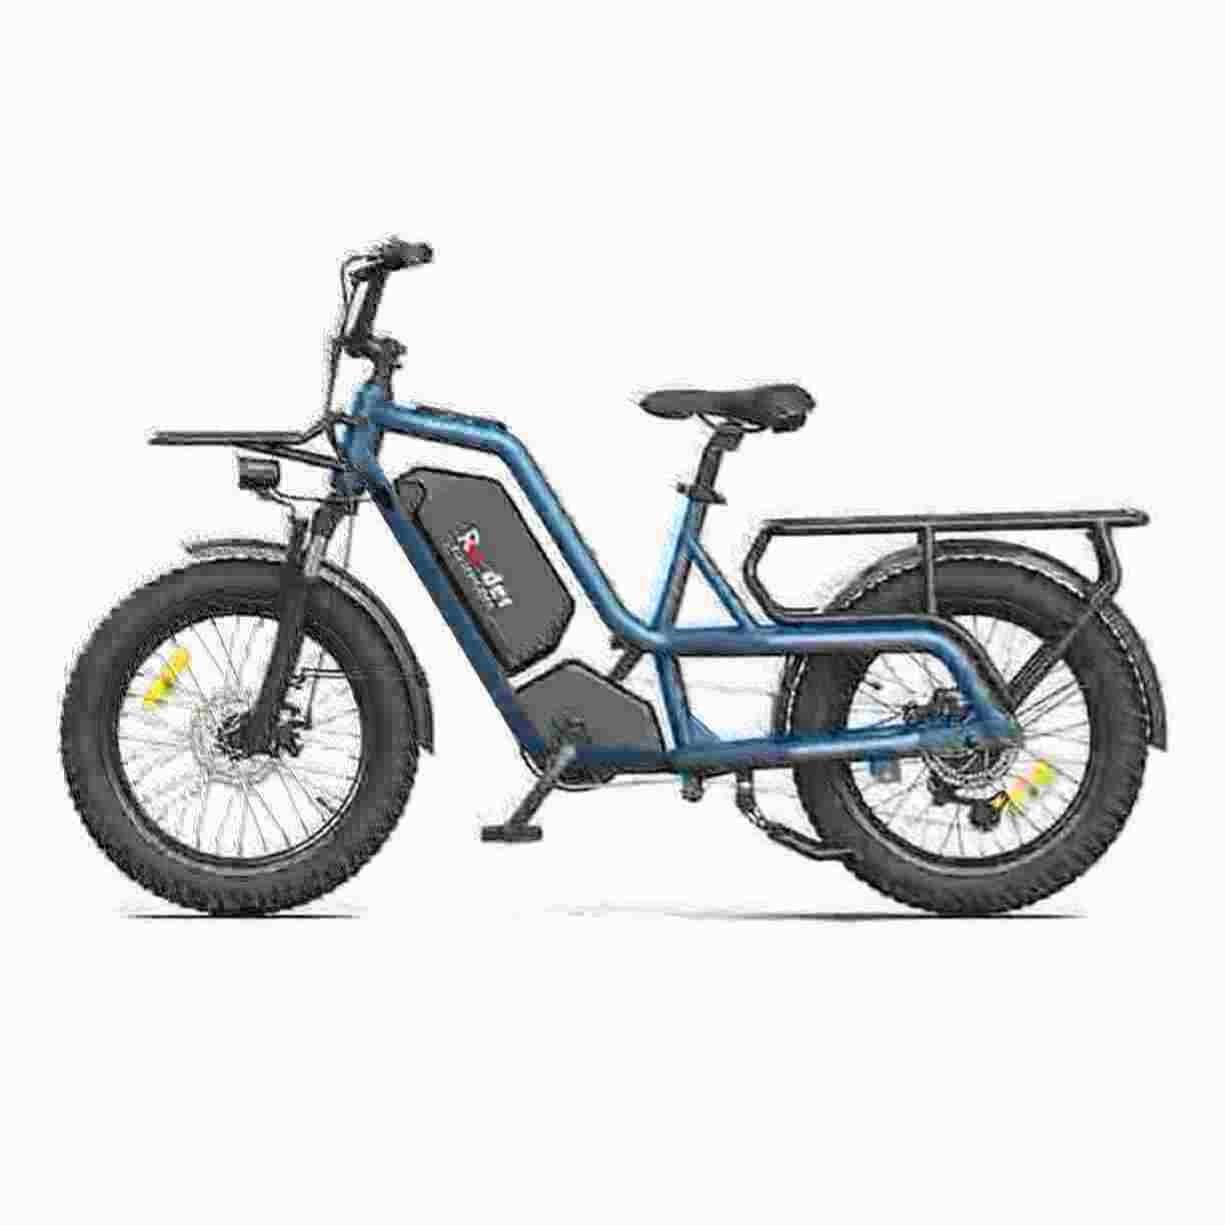 Scooter Bike dealer manufacturer factory wholesale